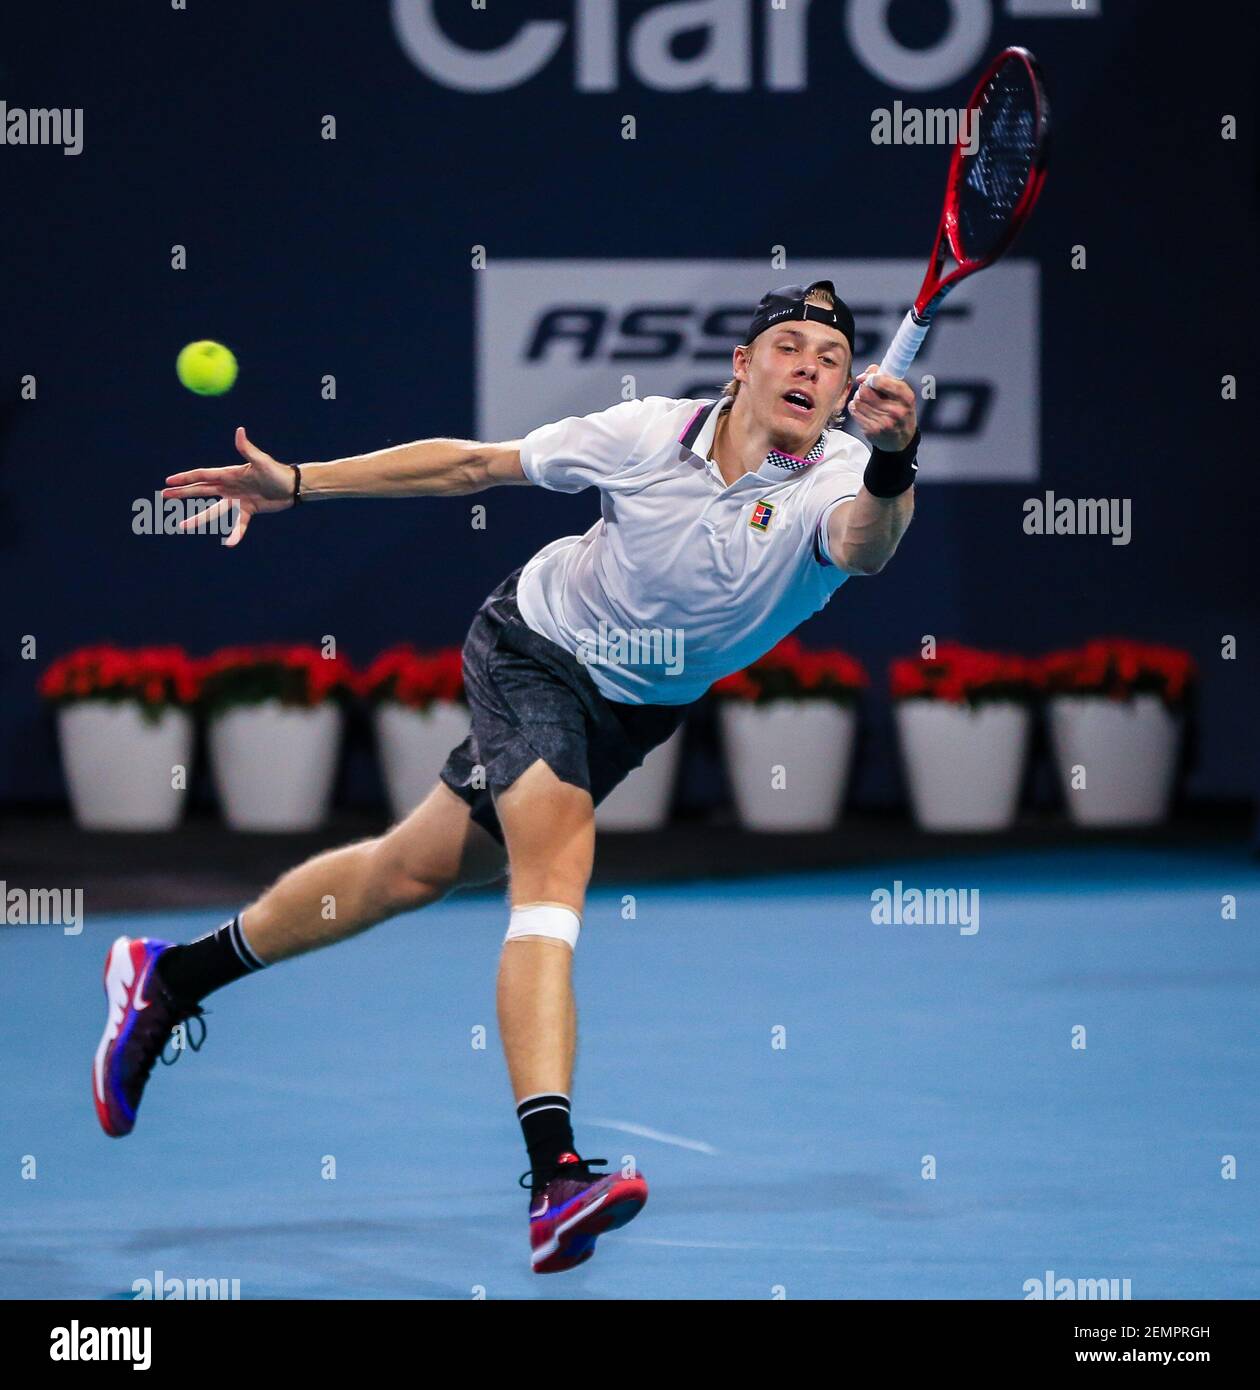 29 mars 2019 : Denis Shapovalov, du Canada, en action contre Roger Federer,  de Suisse, lors d'un match semi-fin de l'Open de Miami 2019 présenté par le  tournoi de tennis professionnel Itau,